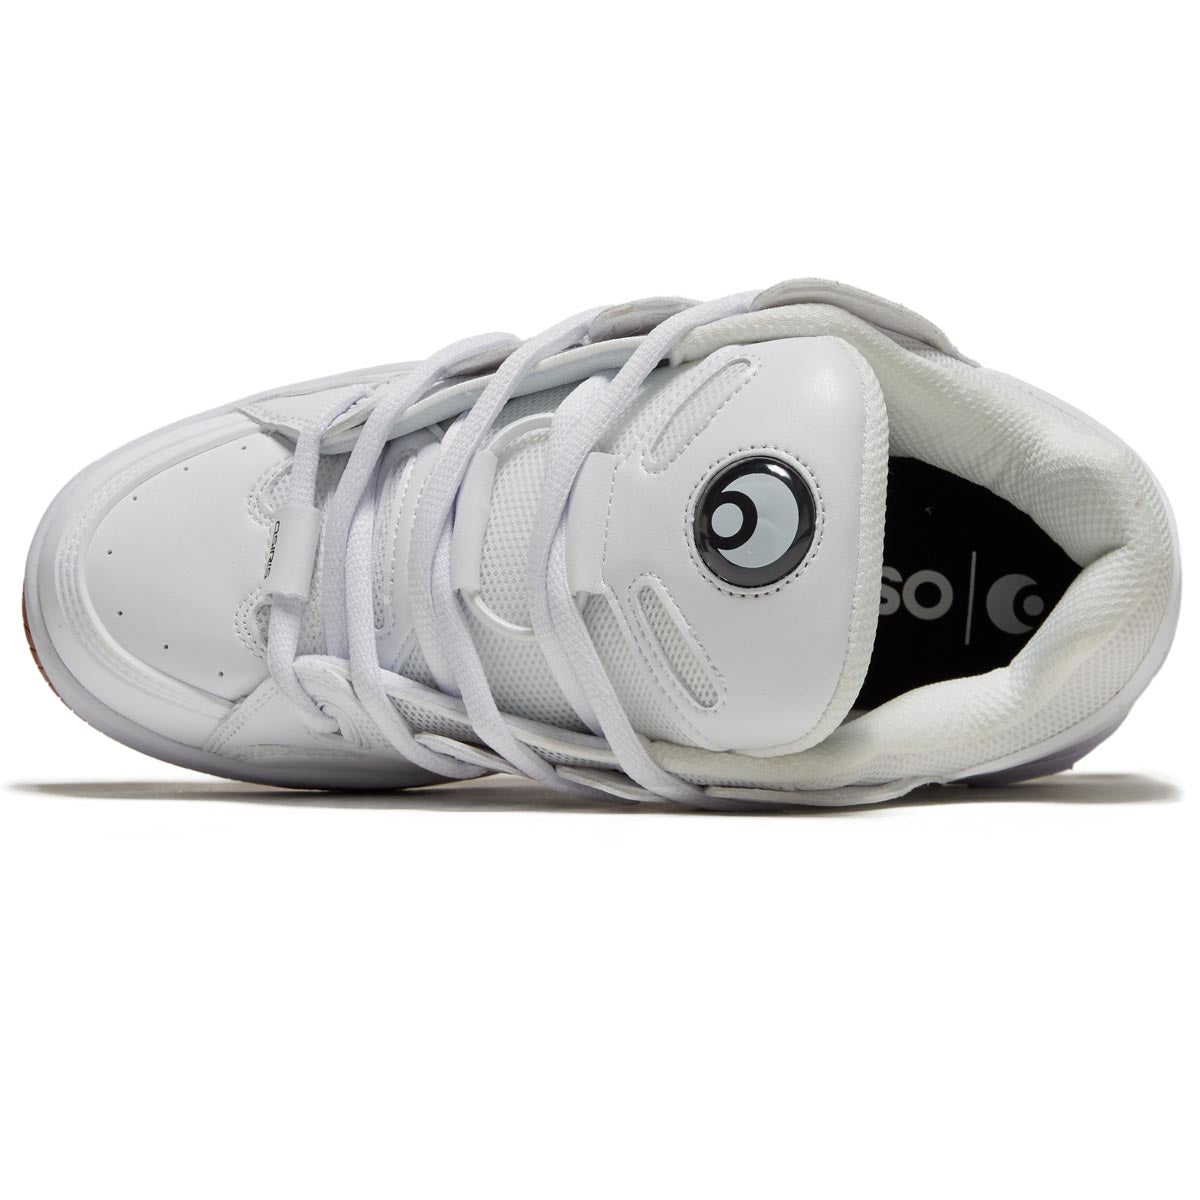 Osiris D3 Og Shoes - White/Gum image 3